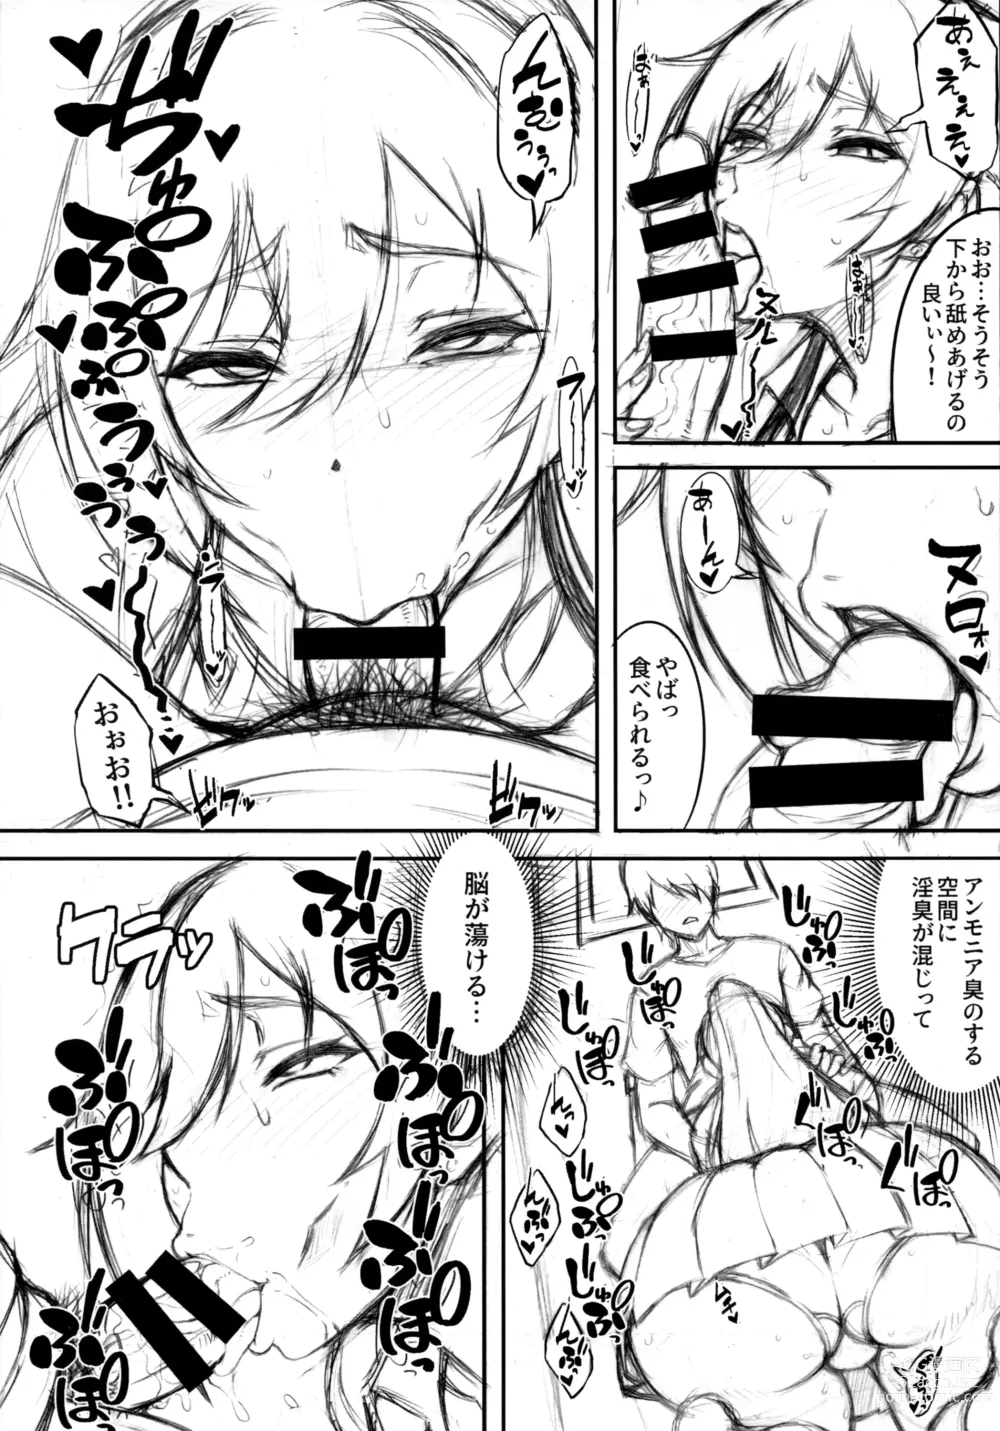 Page 10 of doujinshi SSR 6 Jun